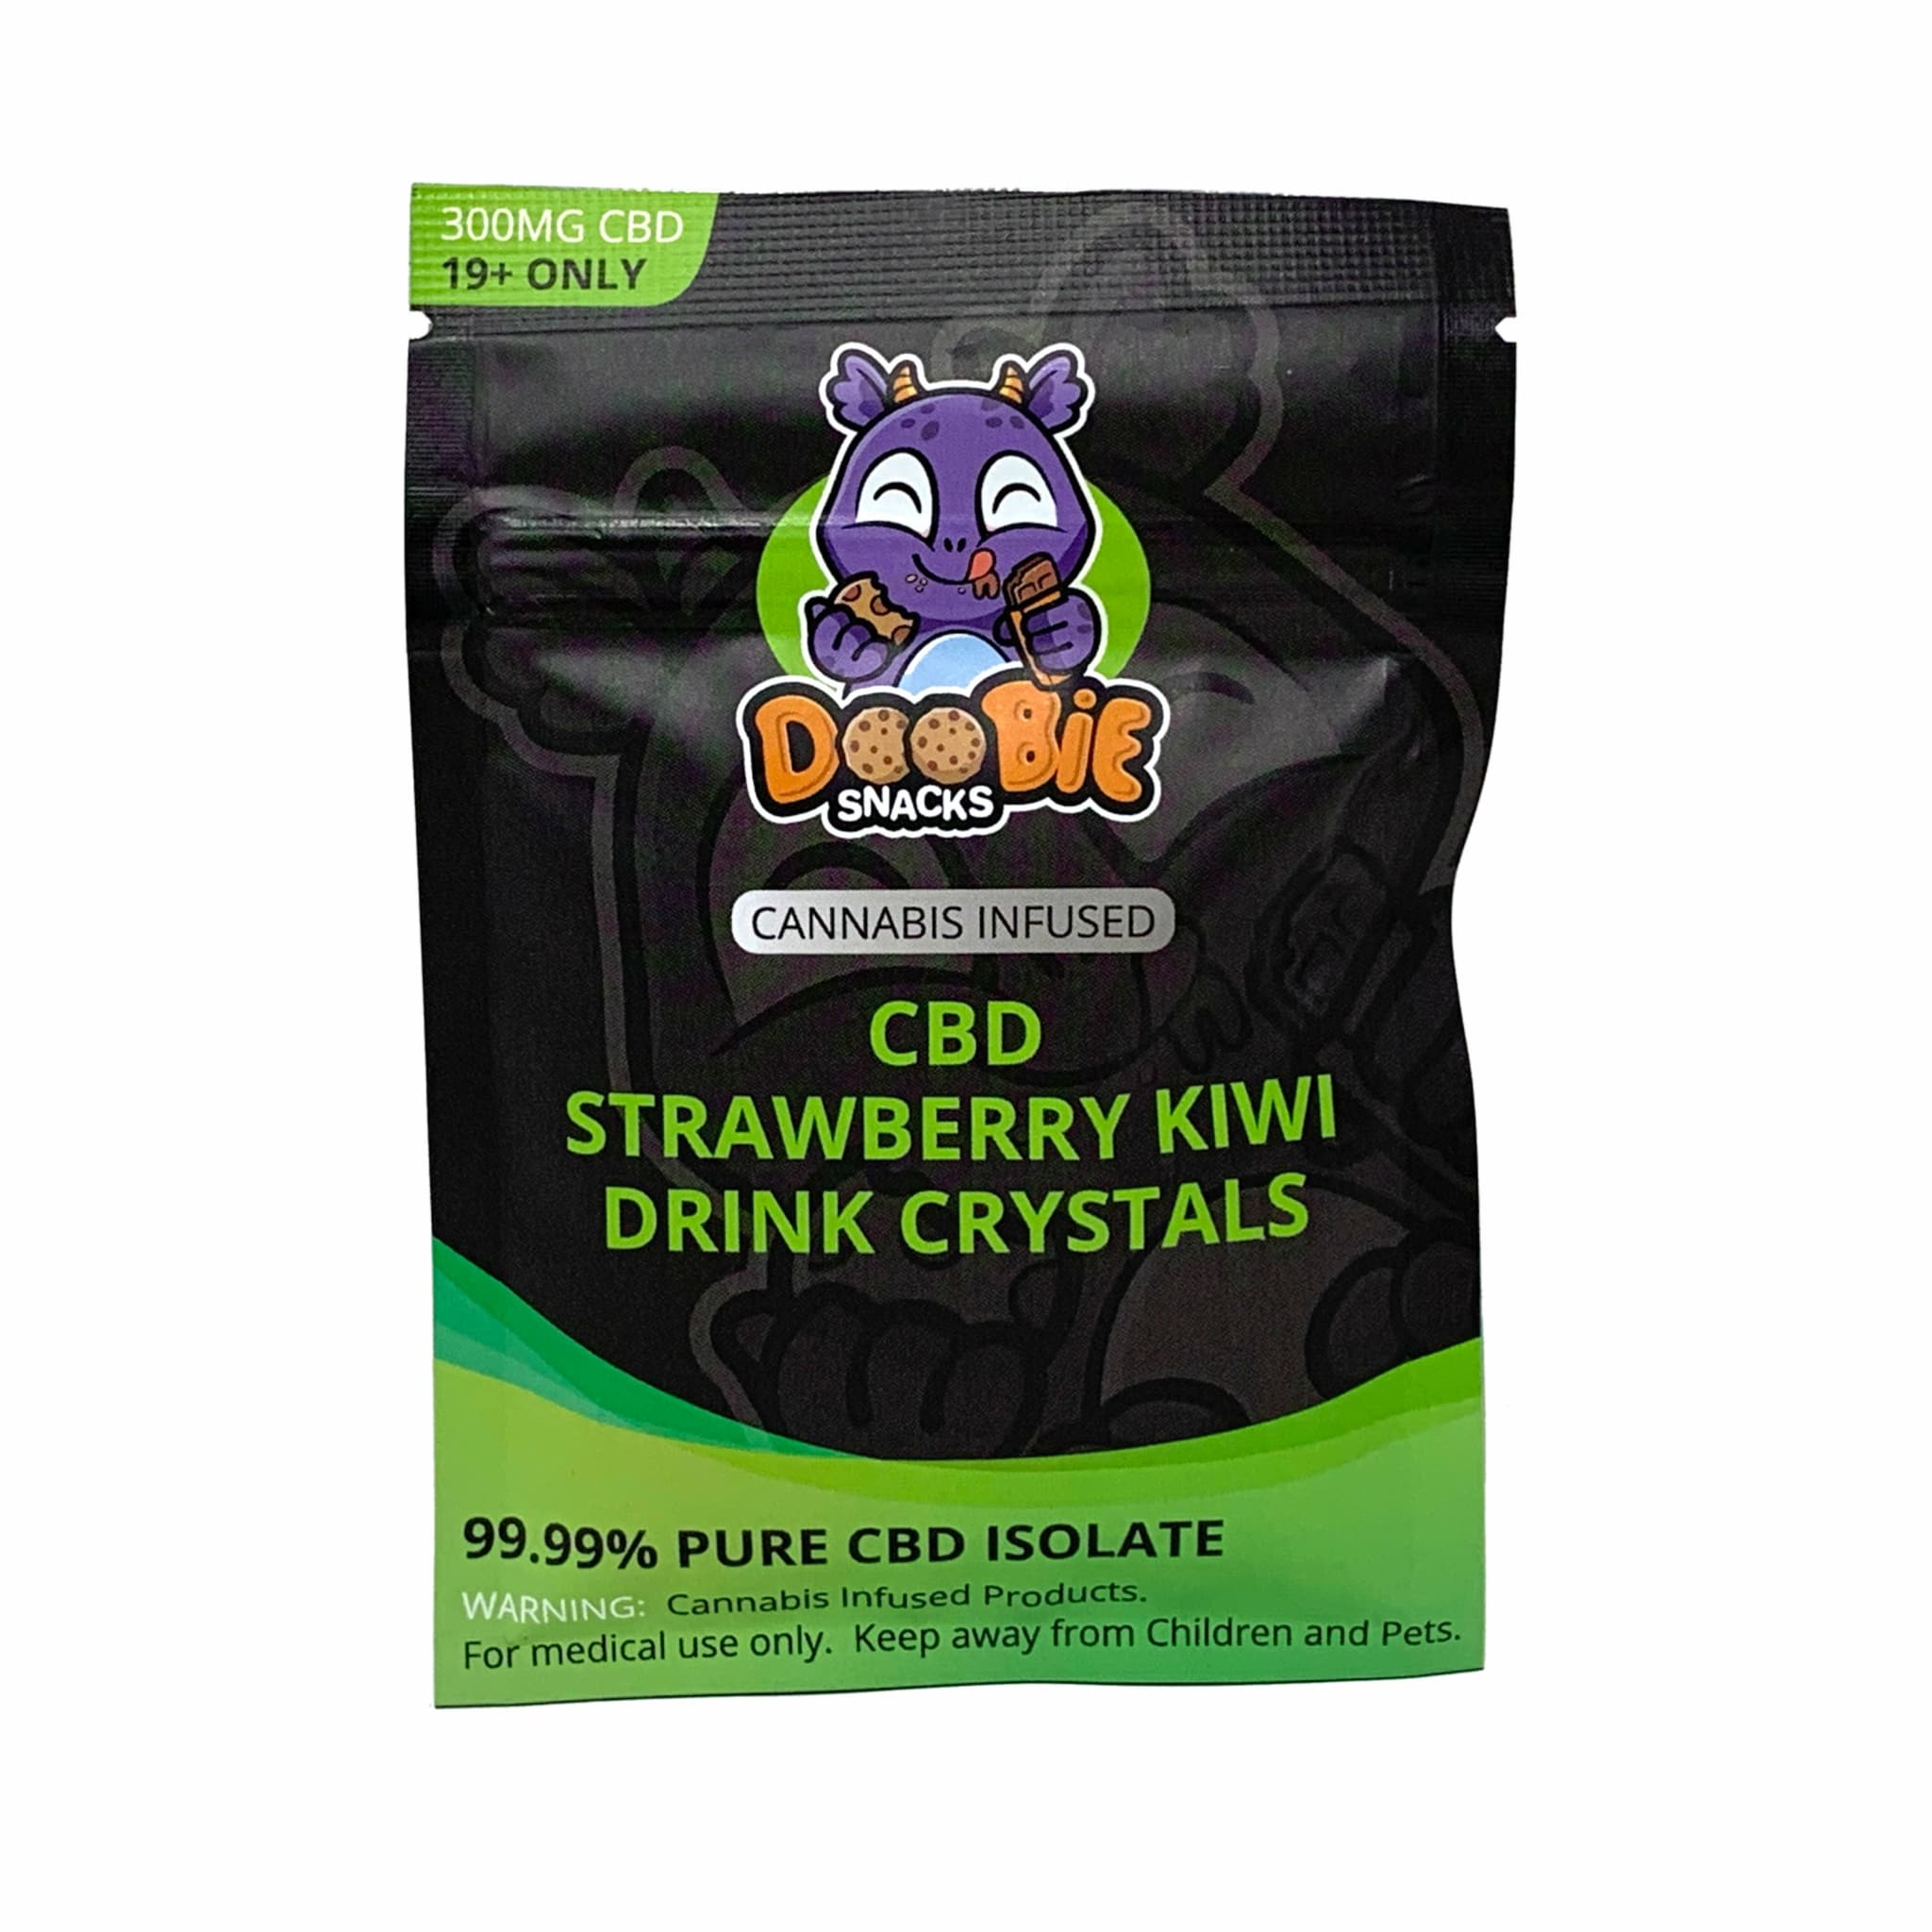 Buy Doobie Snacks Drink Mix - CBD Online In Canada